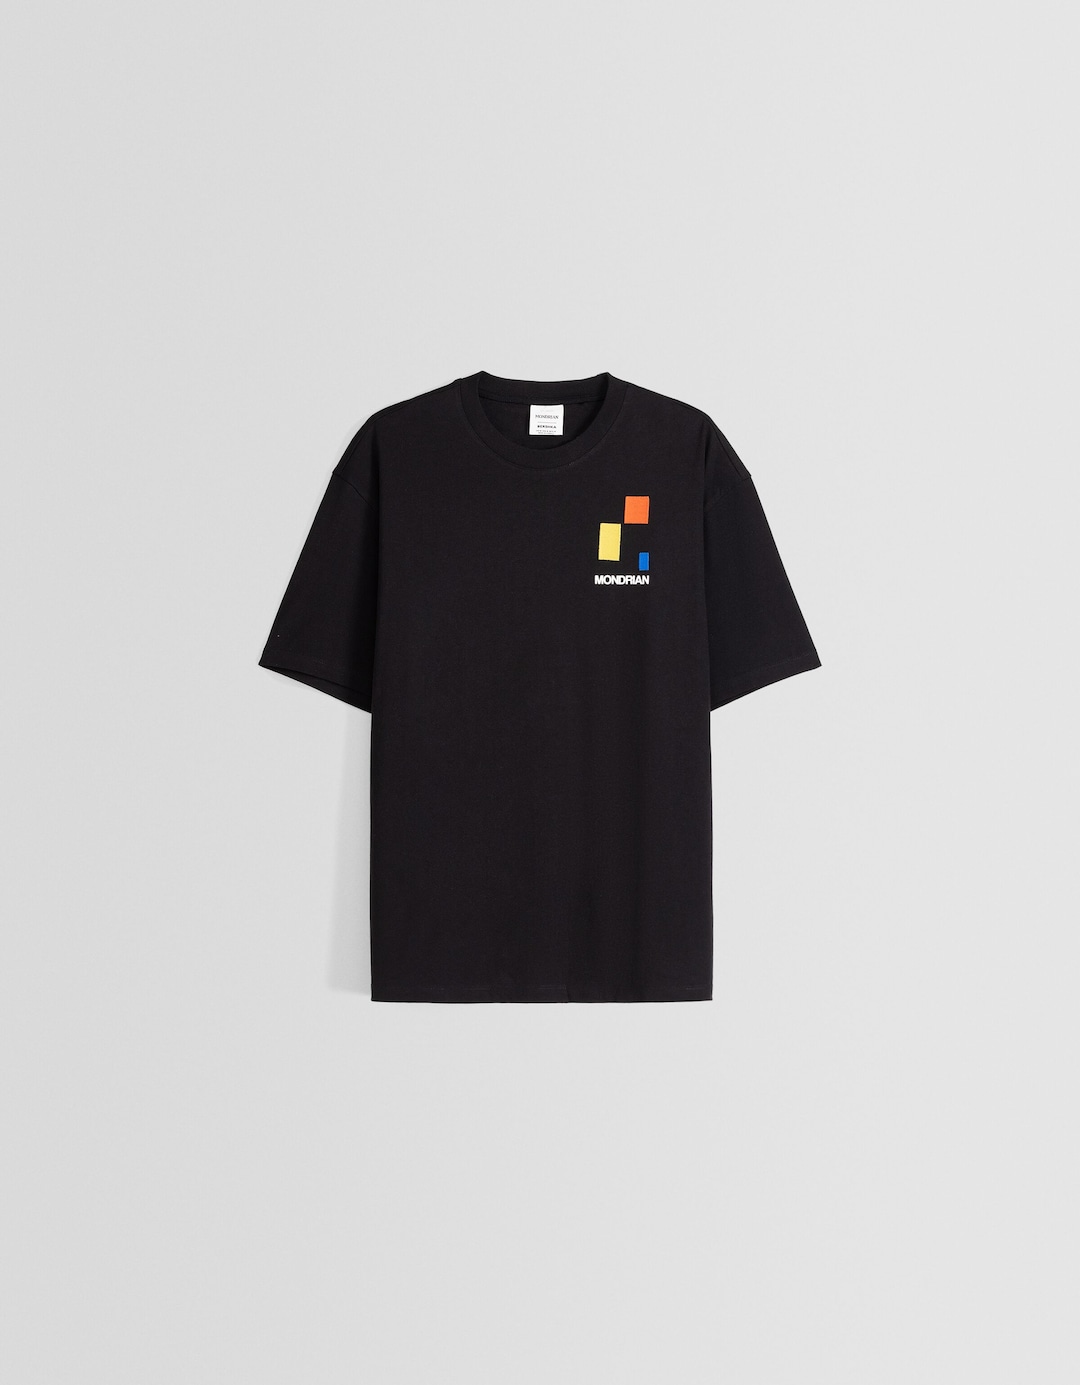 T-shirt Piet Mondrian manches courtes oversize